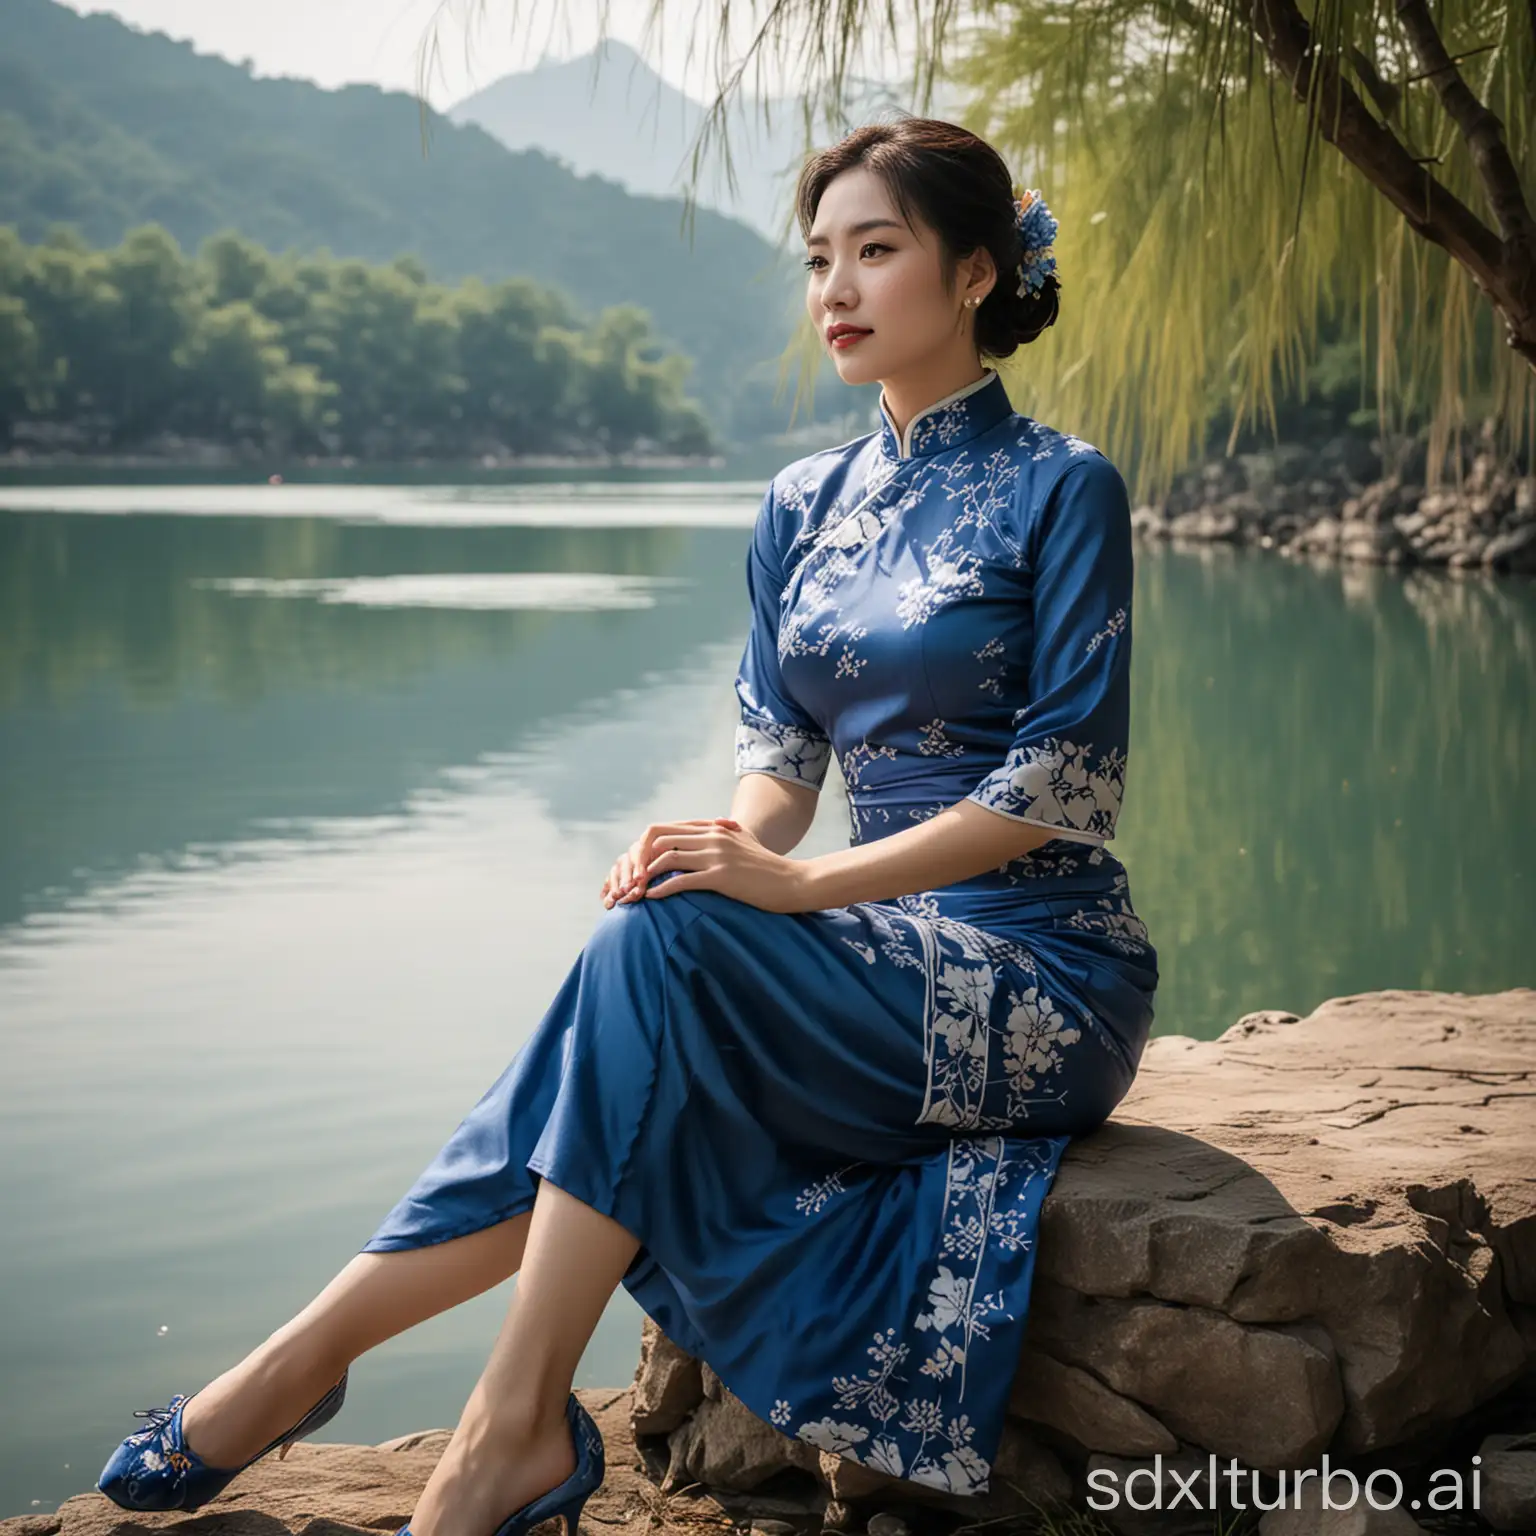 坐在湖边的穿中式蓝色旗袍的美人